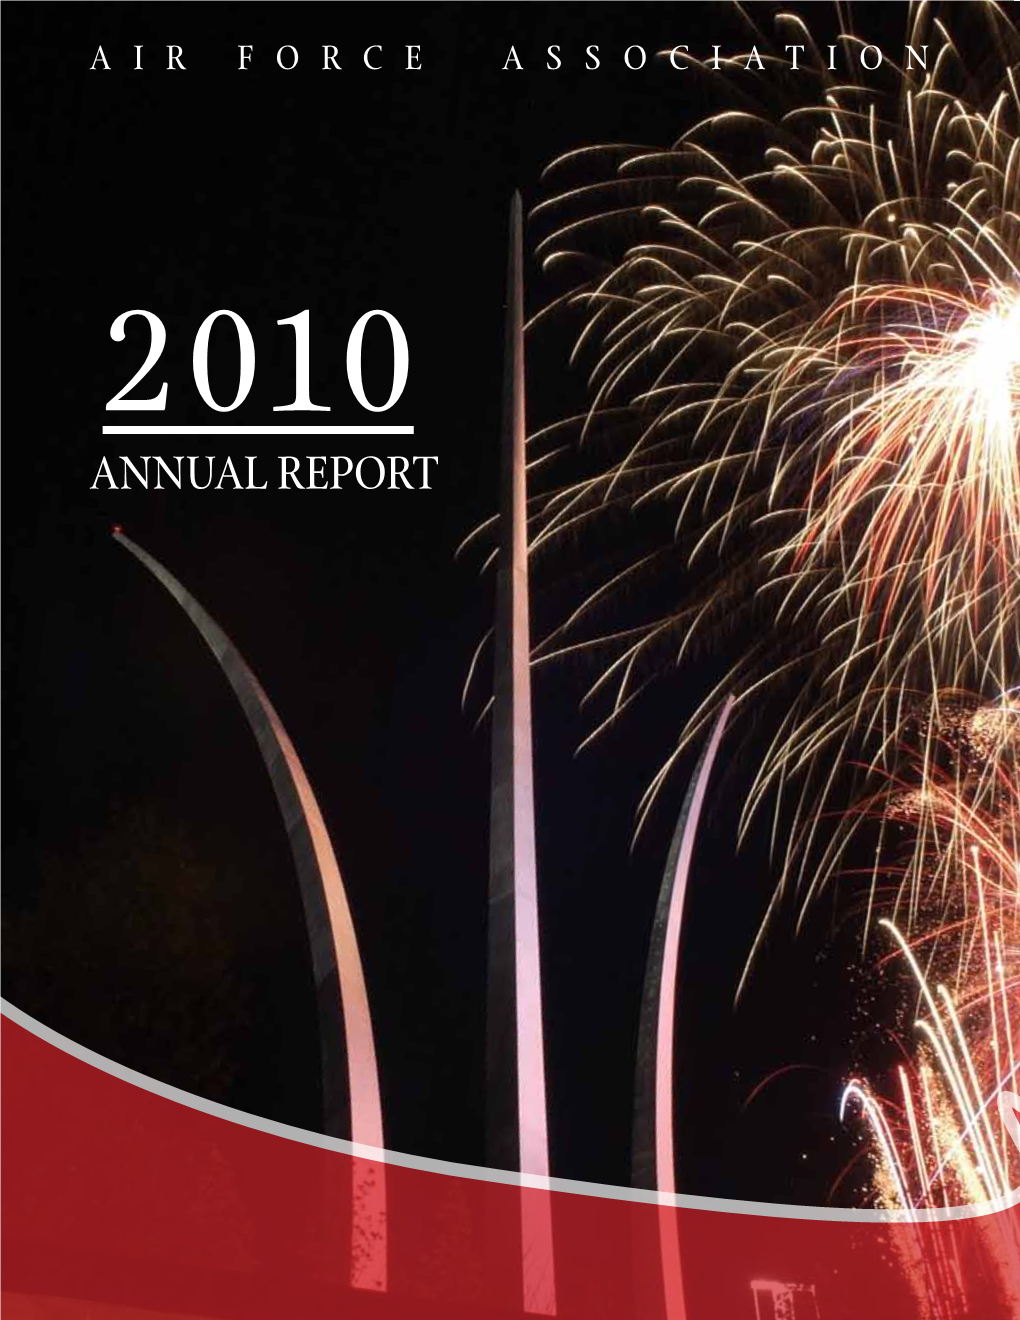 Annual Report Cover Photo / Tsgt